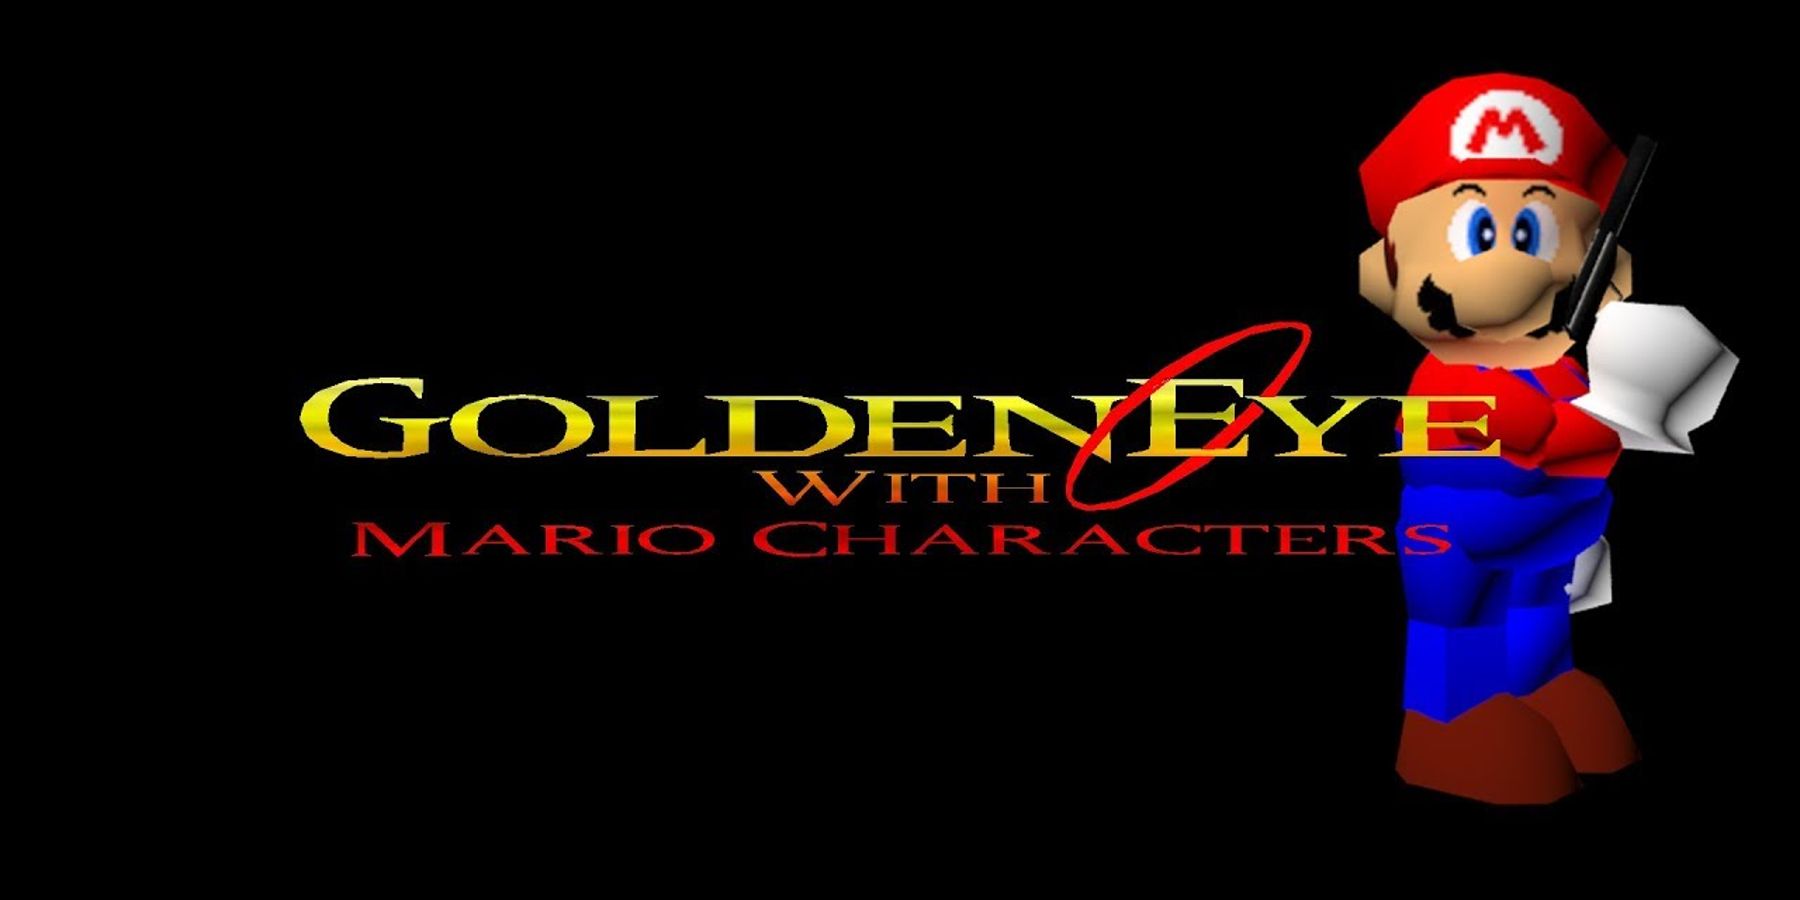 goldeneye-007-with-mario-characters-mod